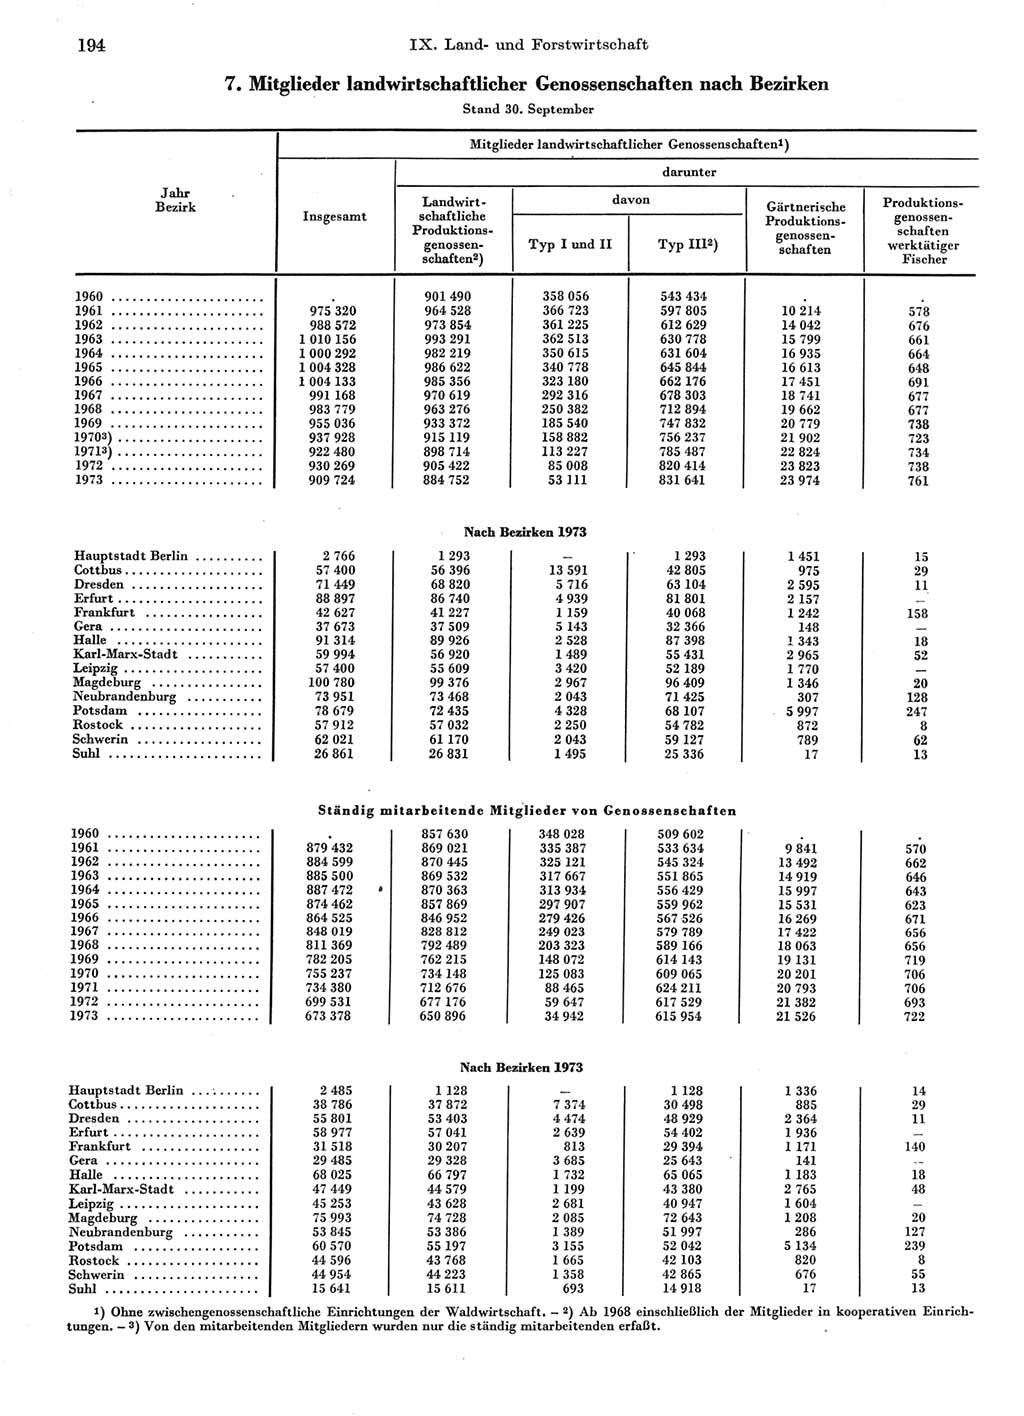 Statistisches Jahrbuch der Deutschen Demokratischen Republik (DDR) 1974, Seite 194 (Stat. Jb. DDR 1974, S. 194)